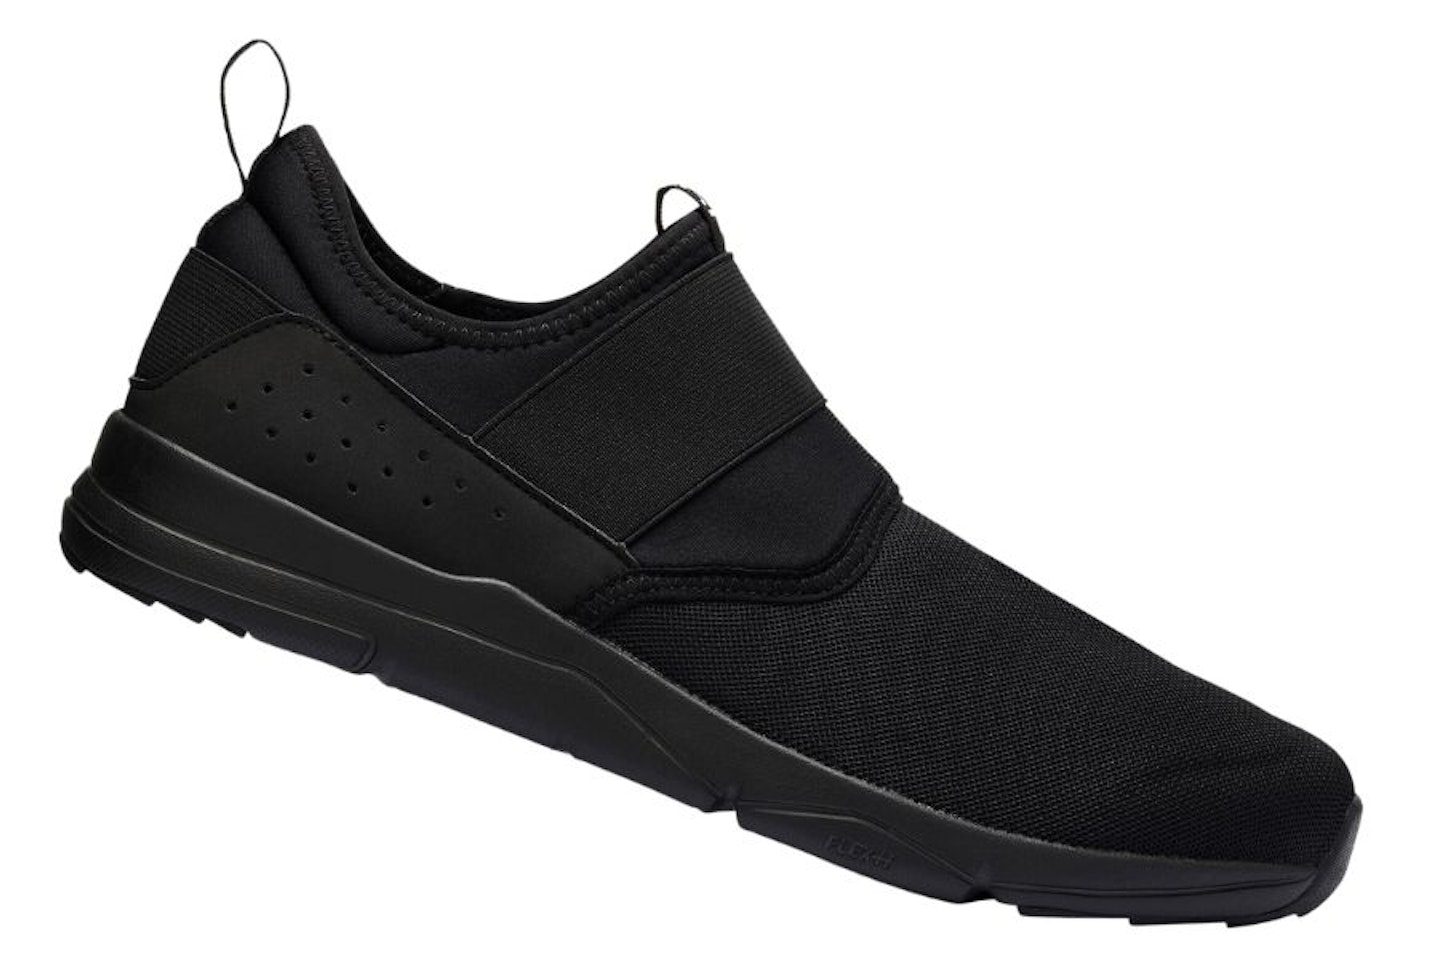 NewFeel PW 160 Slip-On Men's Fitness Walking Shoes